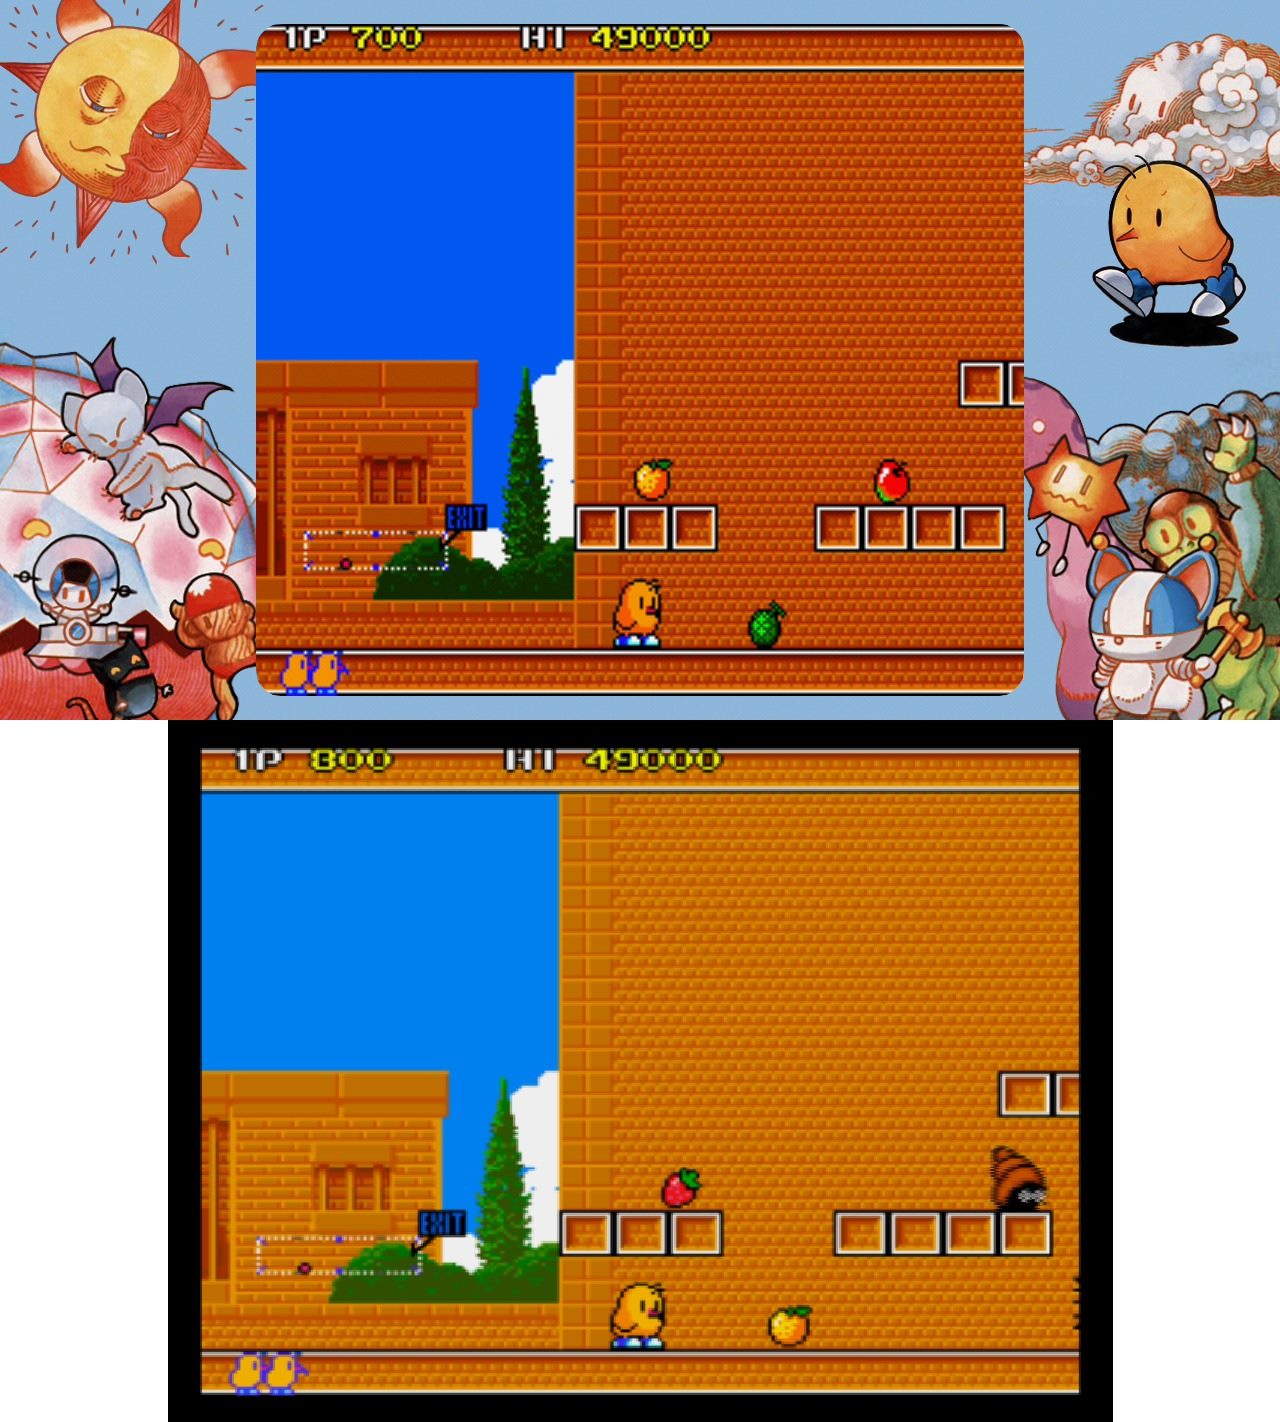 從遊戲畫面的方塊、水果物件，可以判斷Egret II Mini與Taito Memories在顯示比例上的差異。